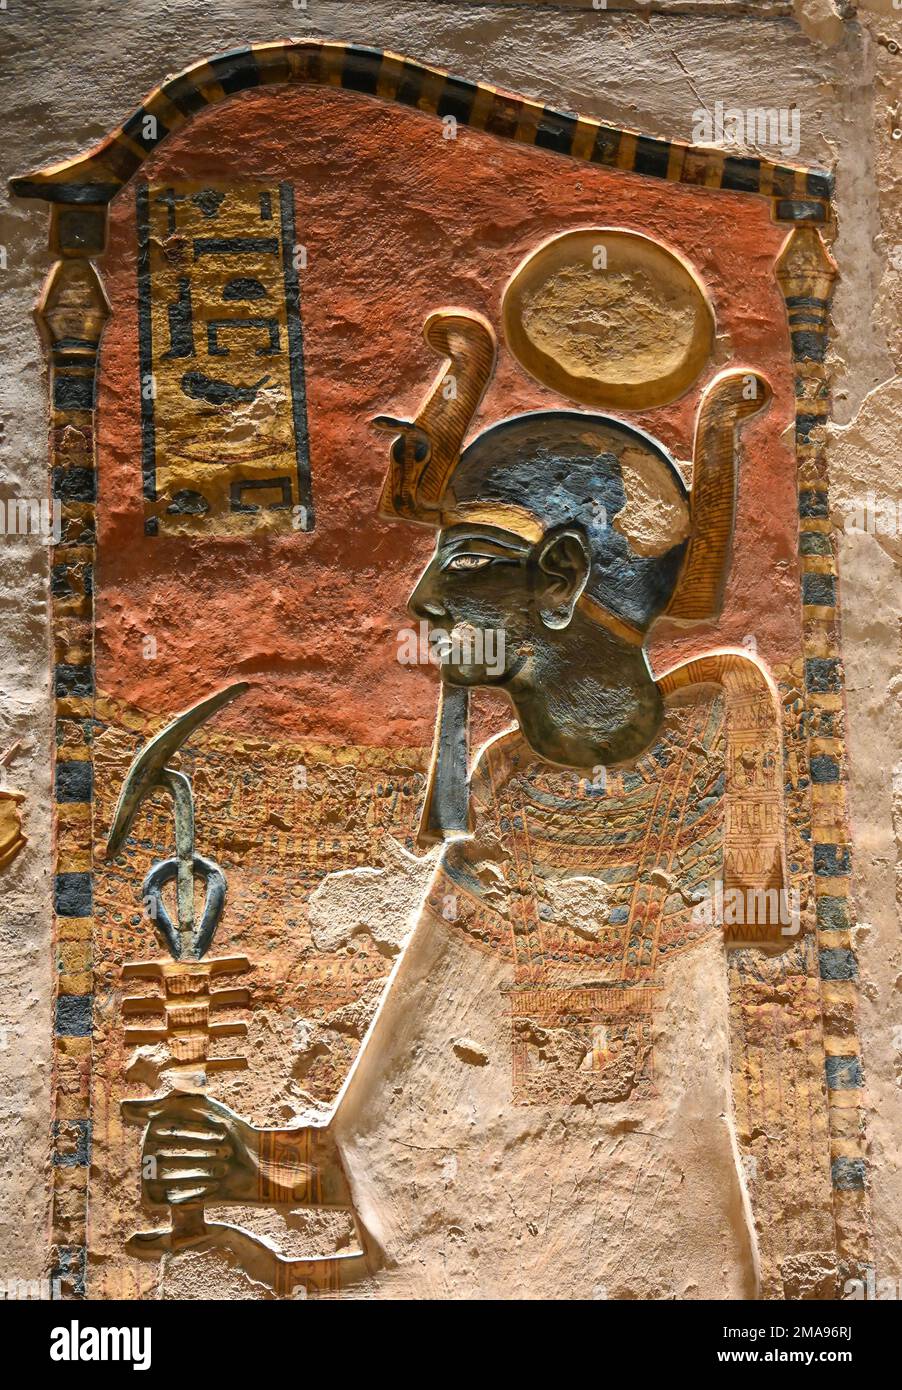 Rilievo, Schöpfergott Ptah in Seinem Schrein, Grab Ramses III, KV11, tal der Könige, Theben-West, Ägypten Foto Stock